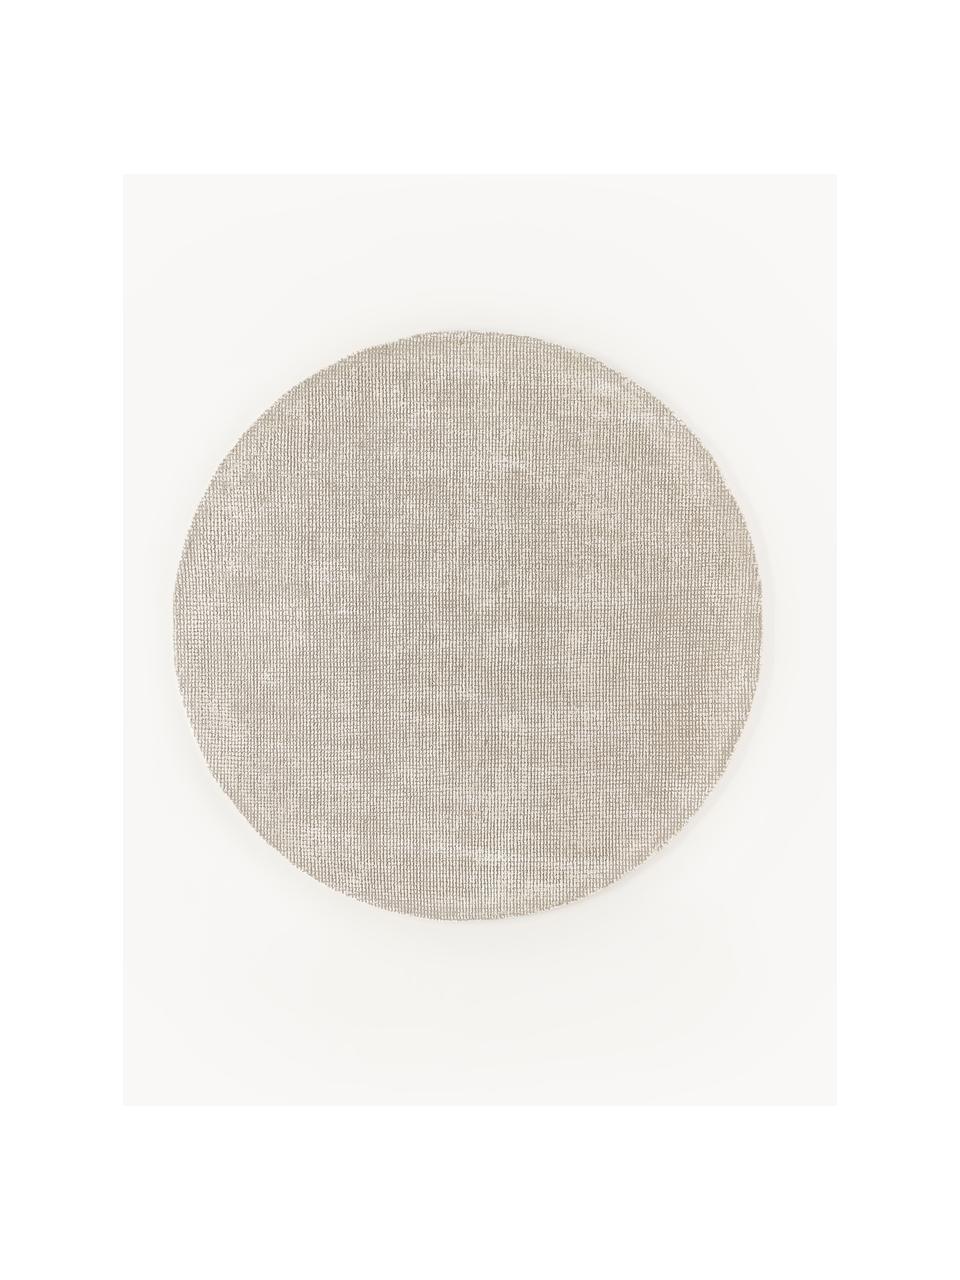 Ručně tkaný  kulatý koberec s nízkým vlasem Mansa, 56 % vlna s certifikací RWS, 44 % viskóza, Béžová, krémově bílá, Ø 150 cm (velikost M)